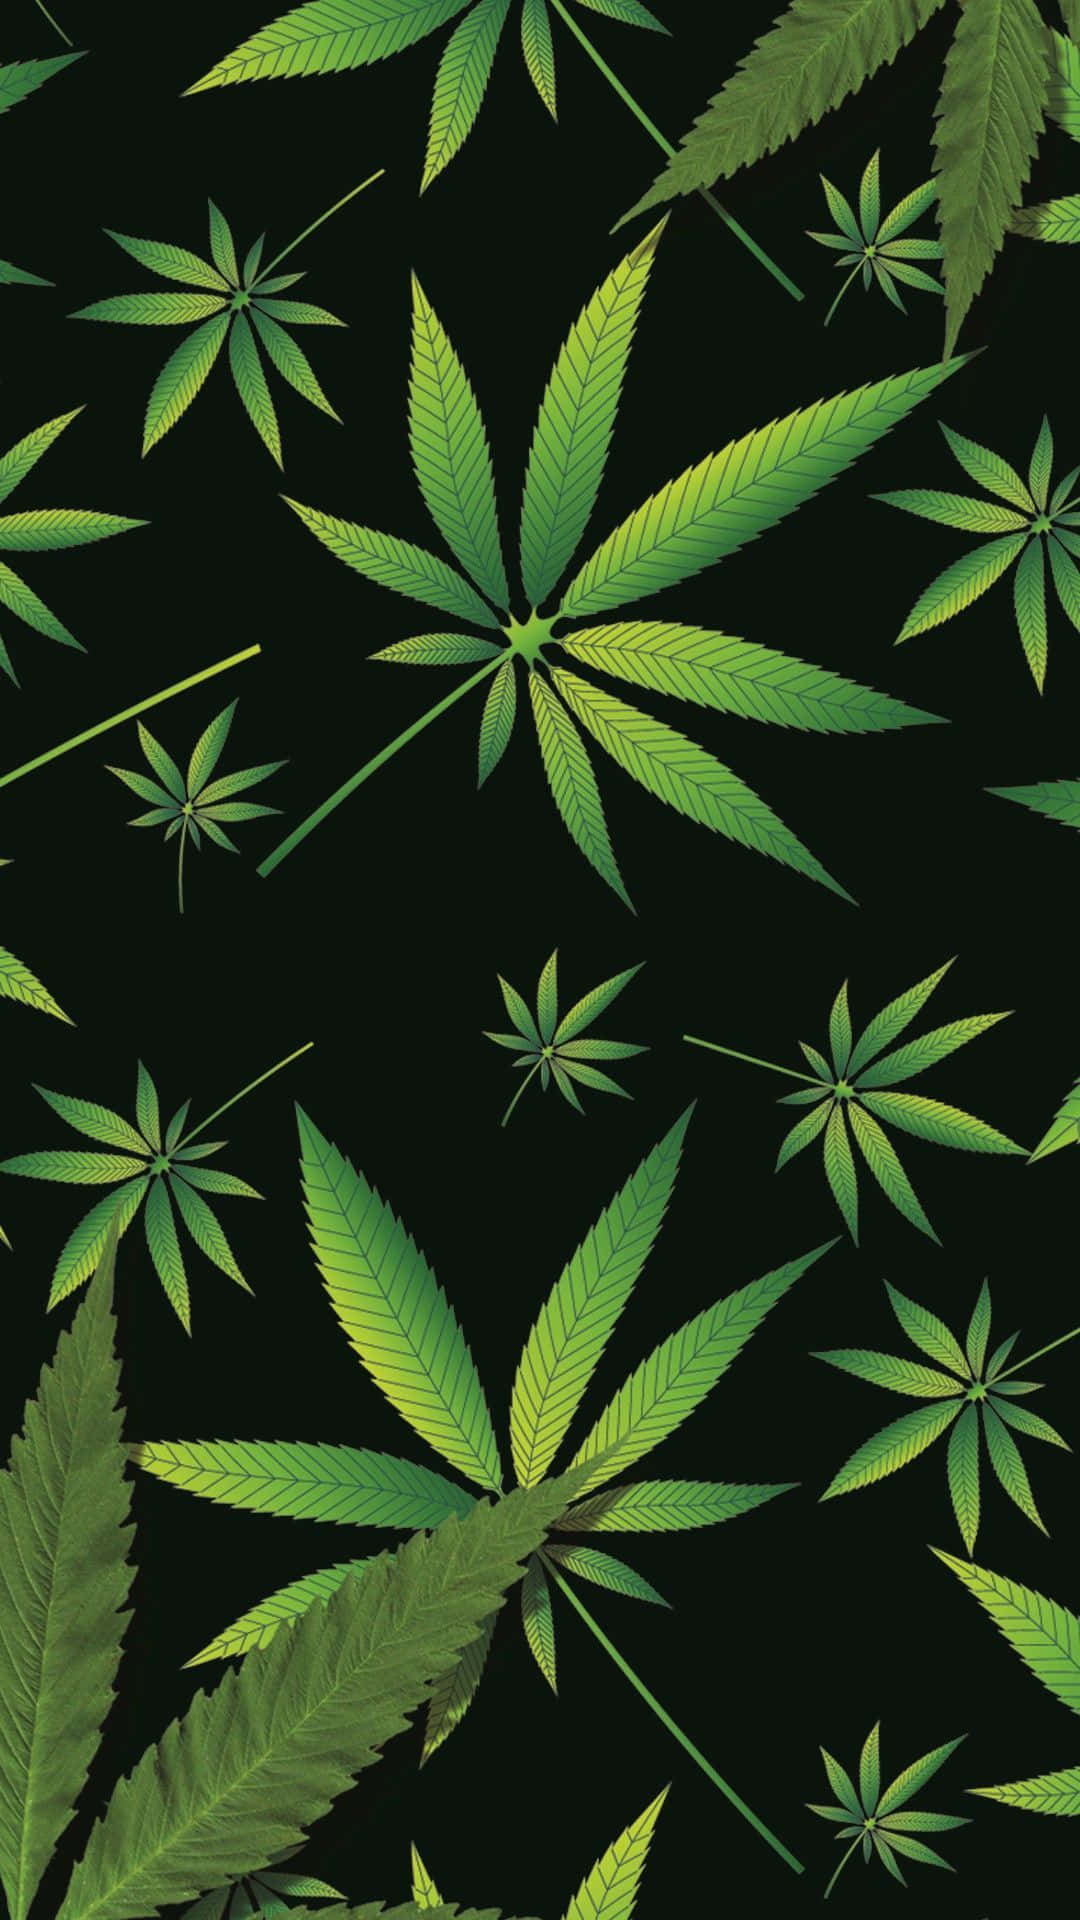 Real Marijuana Leaf On Poster